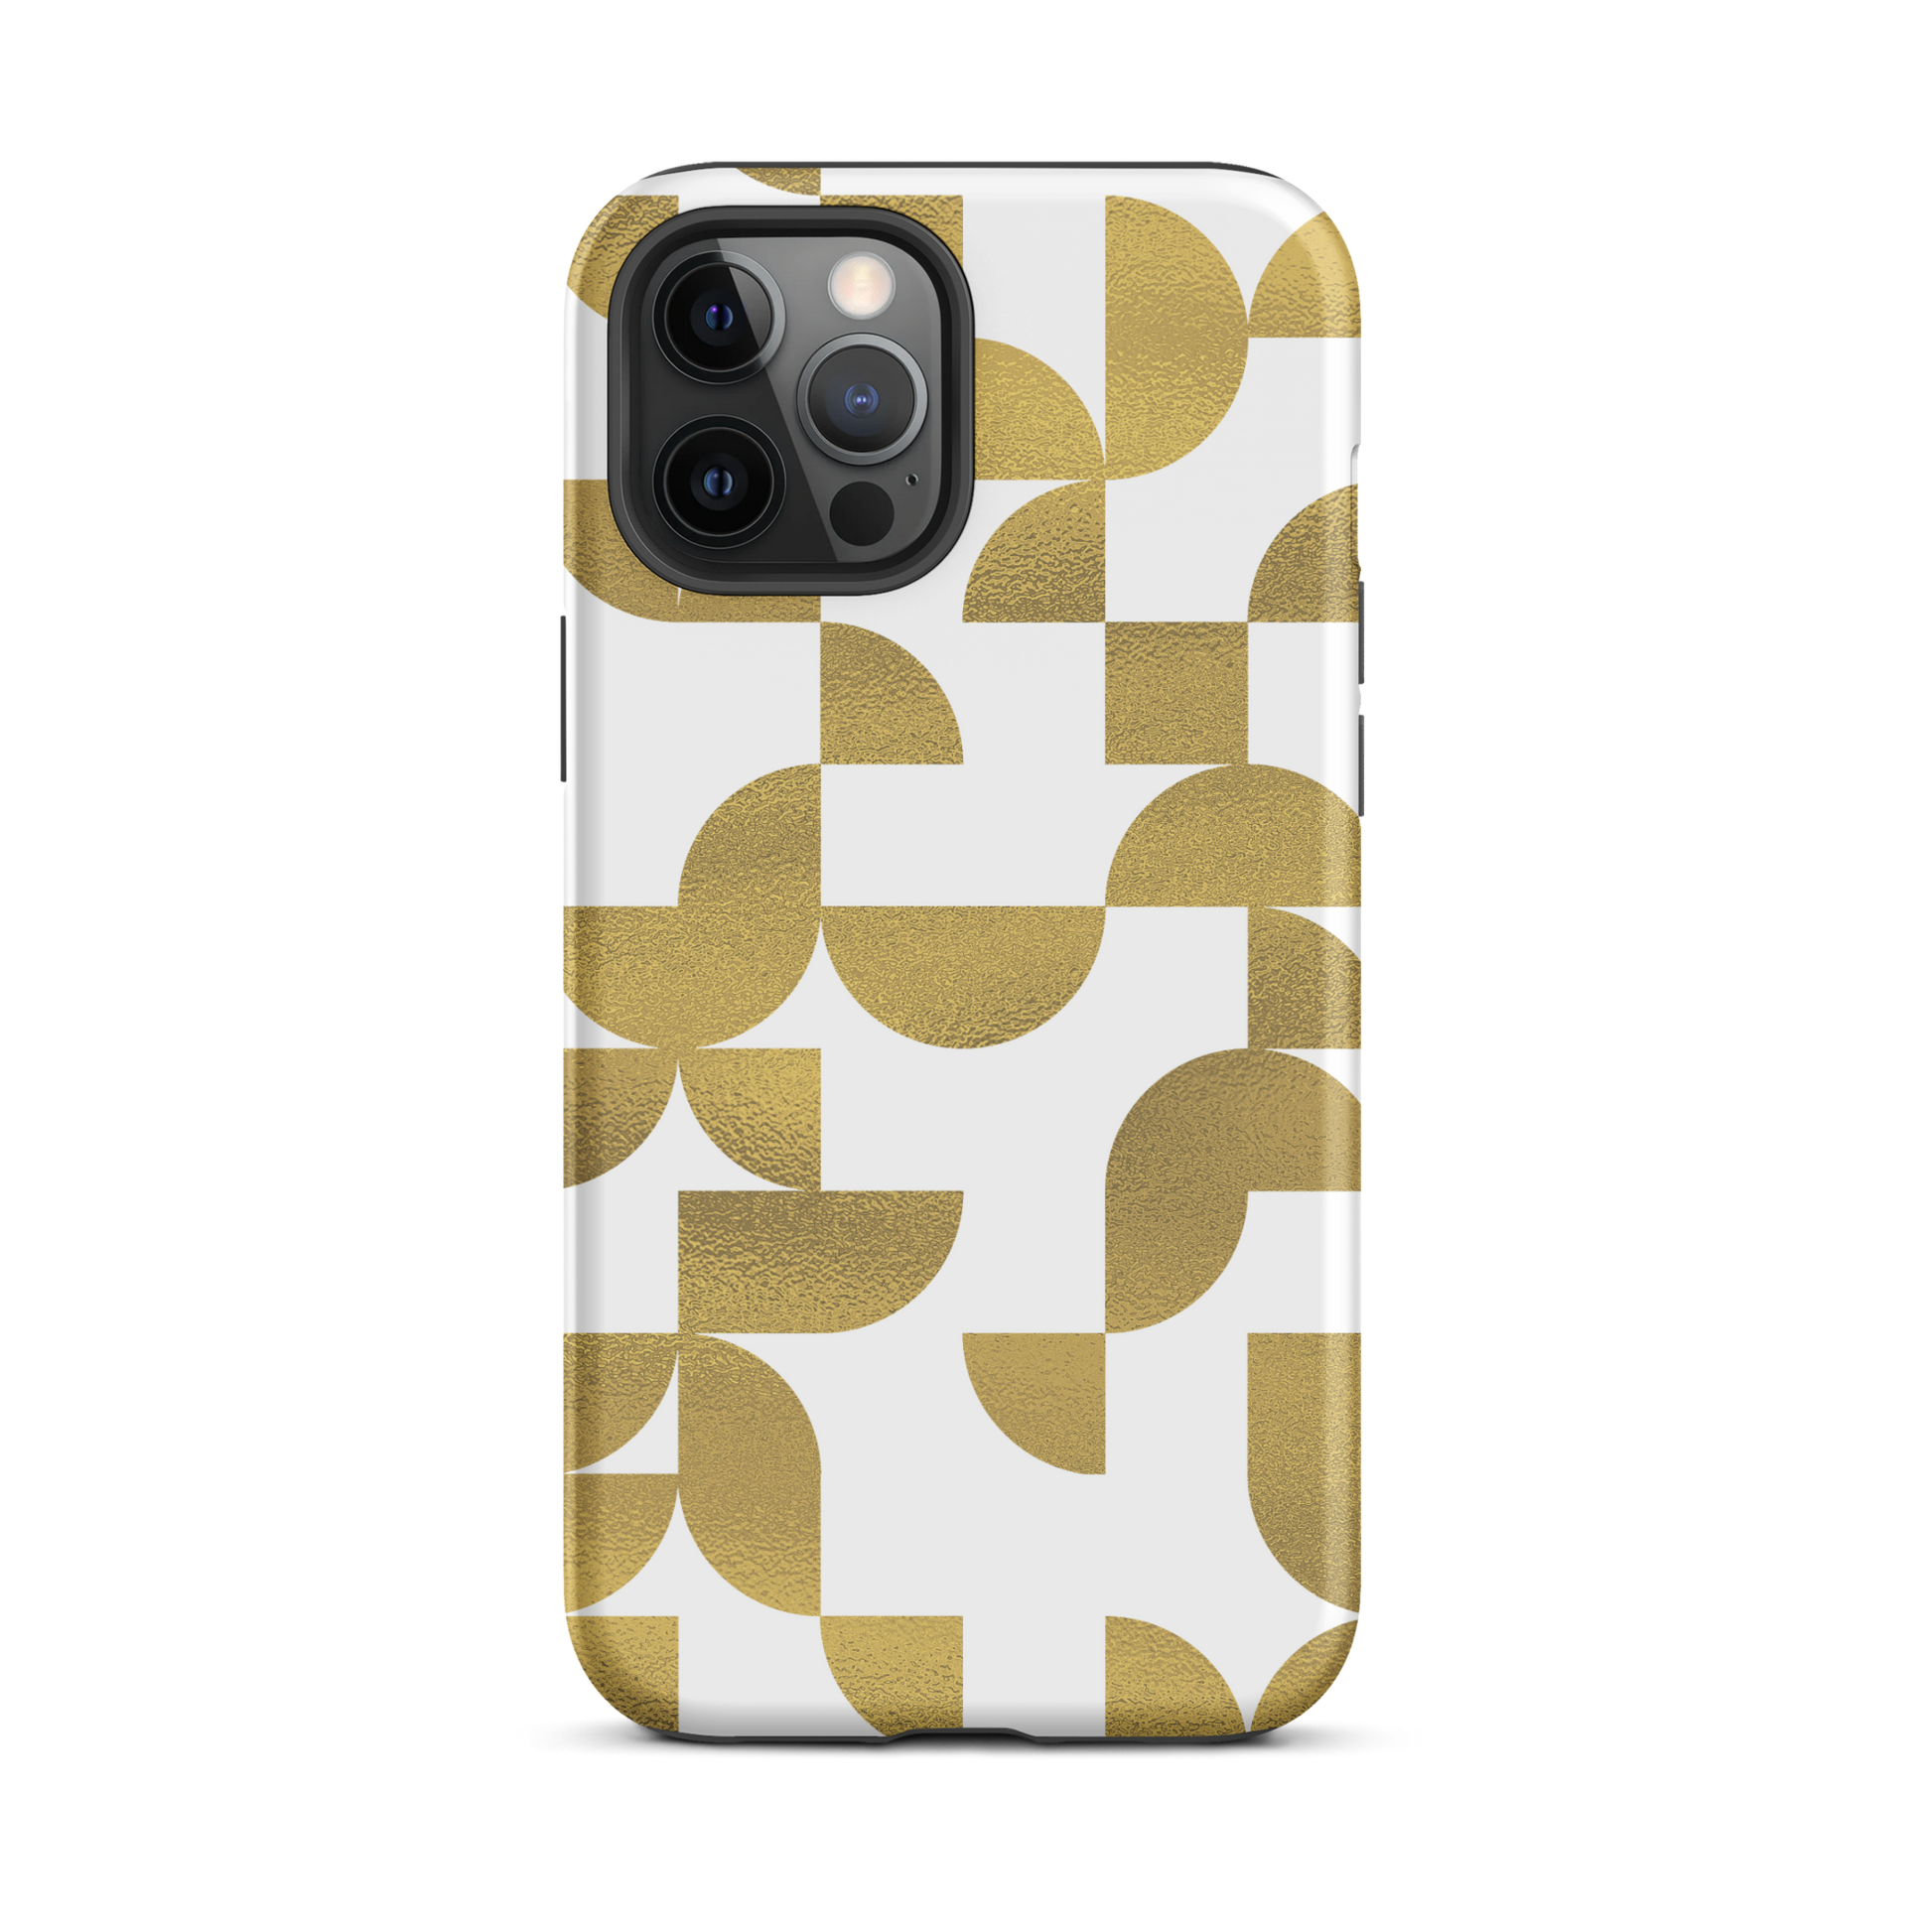 iPhone 12 pro max tough case in Geometria I gold design